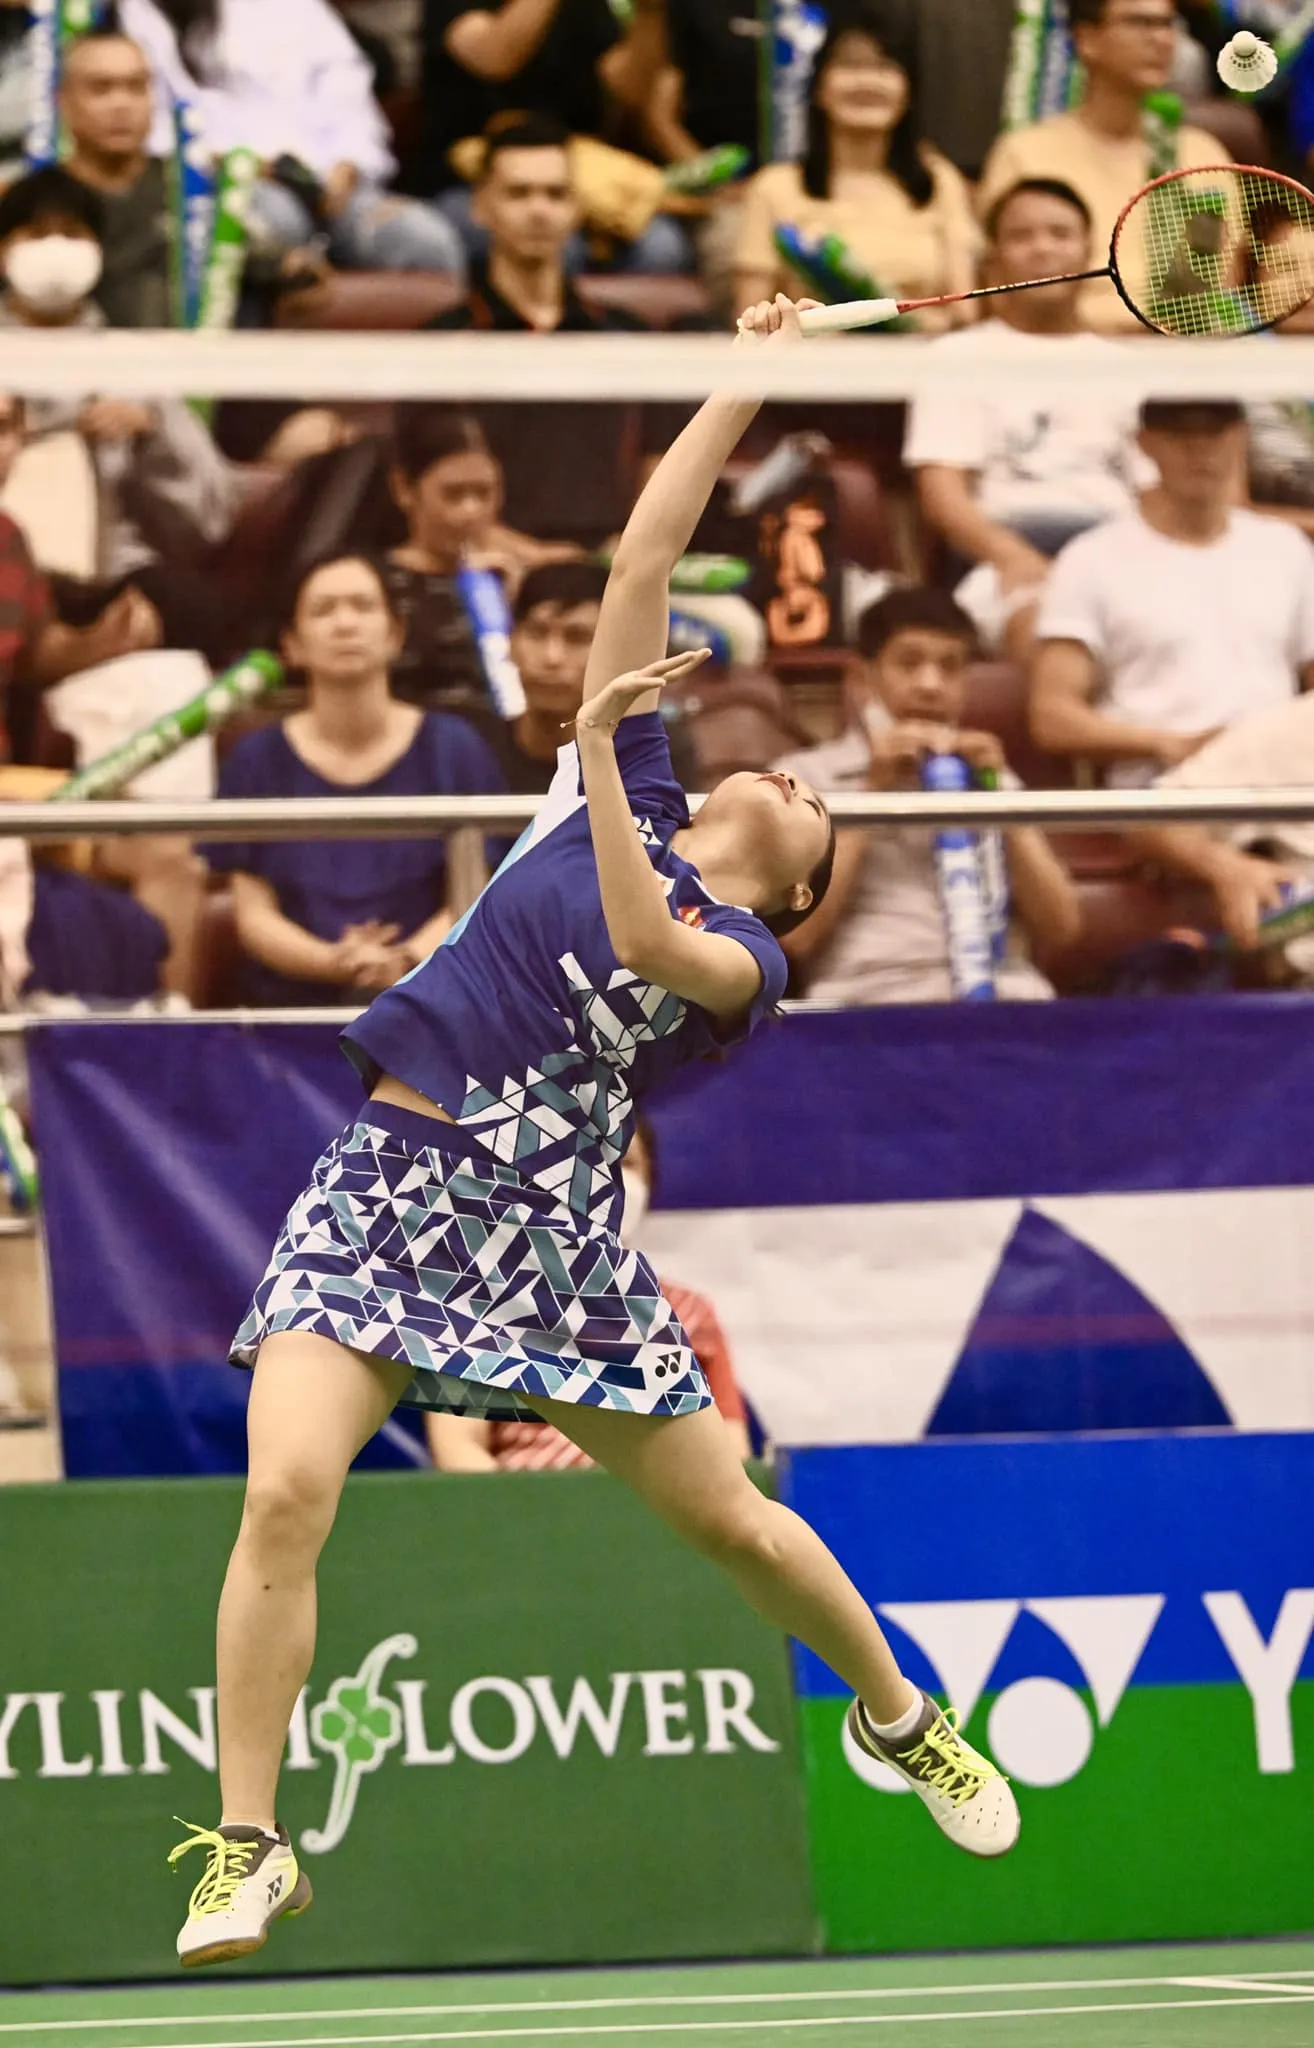 Hoa khôi cầu lông Nguyễn Thùy Linh giành vé vào bán kết giải Australia 2022